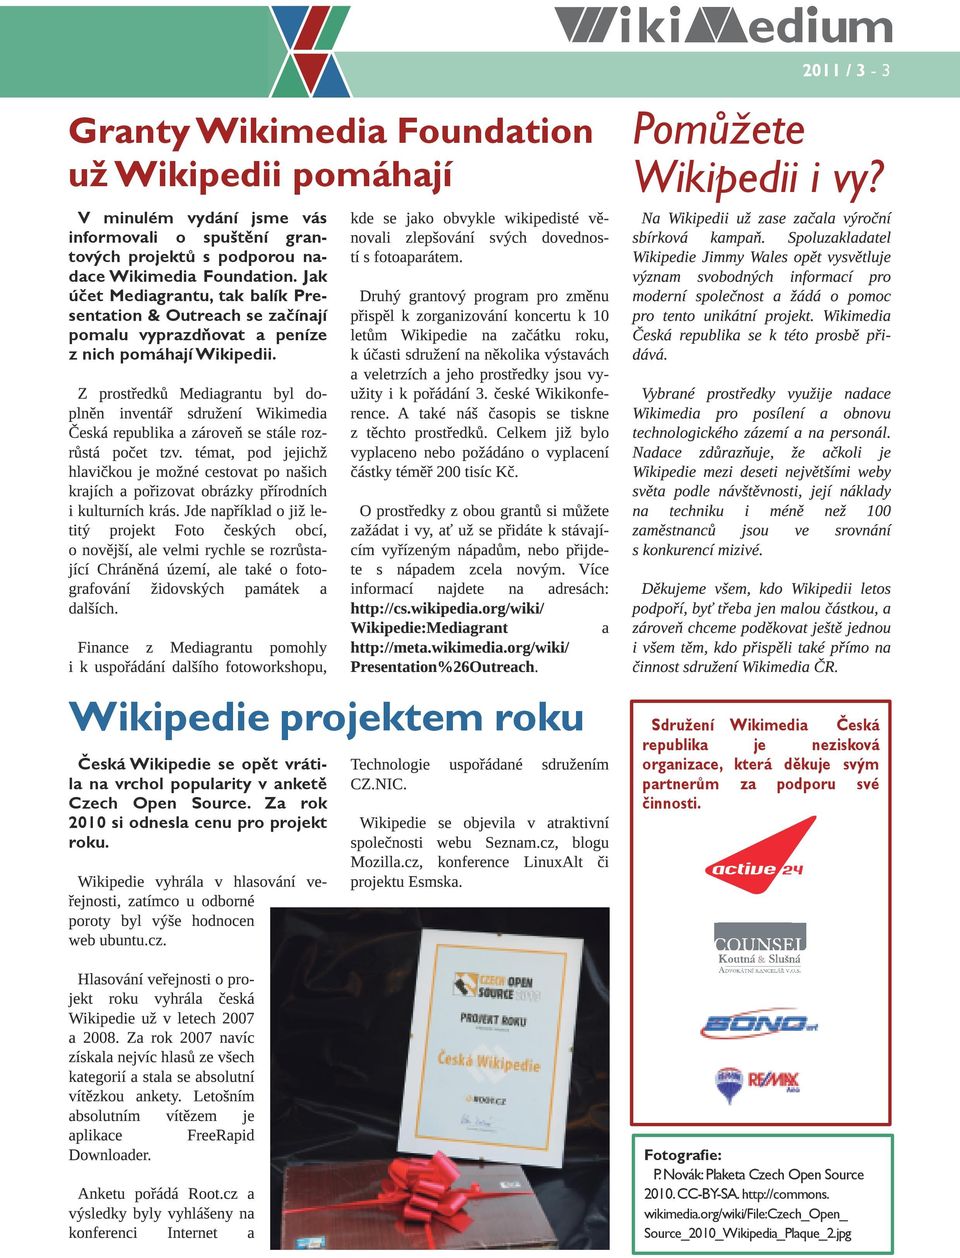 Z prostředků Mediagrantu byl doplněn inventář sdružení Wikimedia Česká republika a zároveň se stále rozrůstá počet tzv.